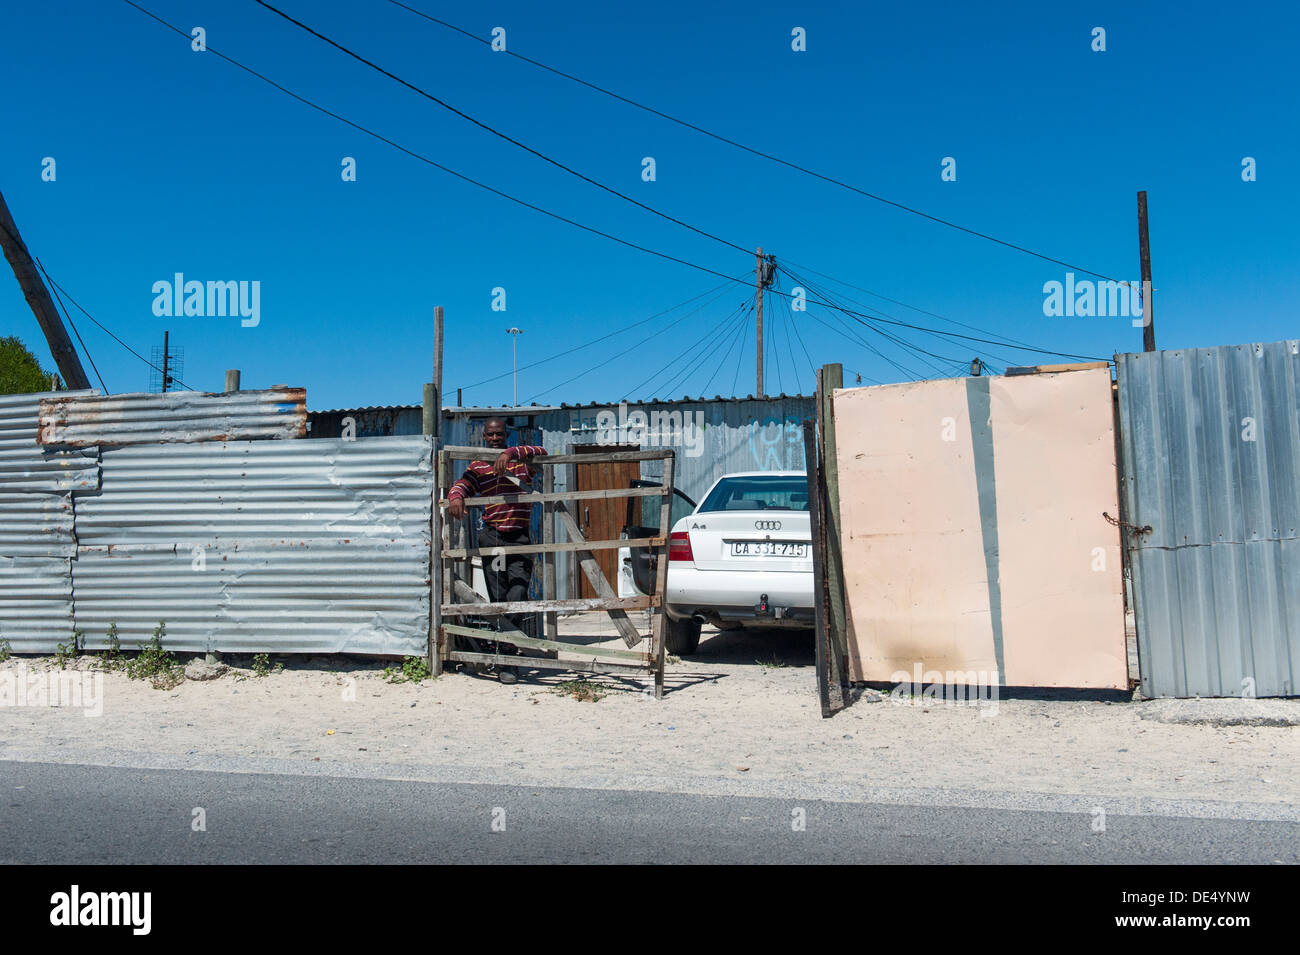 Propriétaire de voiture et voiture garée en face d'une cabane en tôle à Khayelitsha, Cape Town, Afrique du Sud Banque D'Images